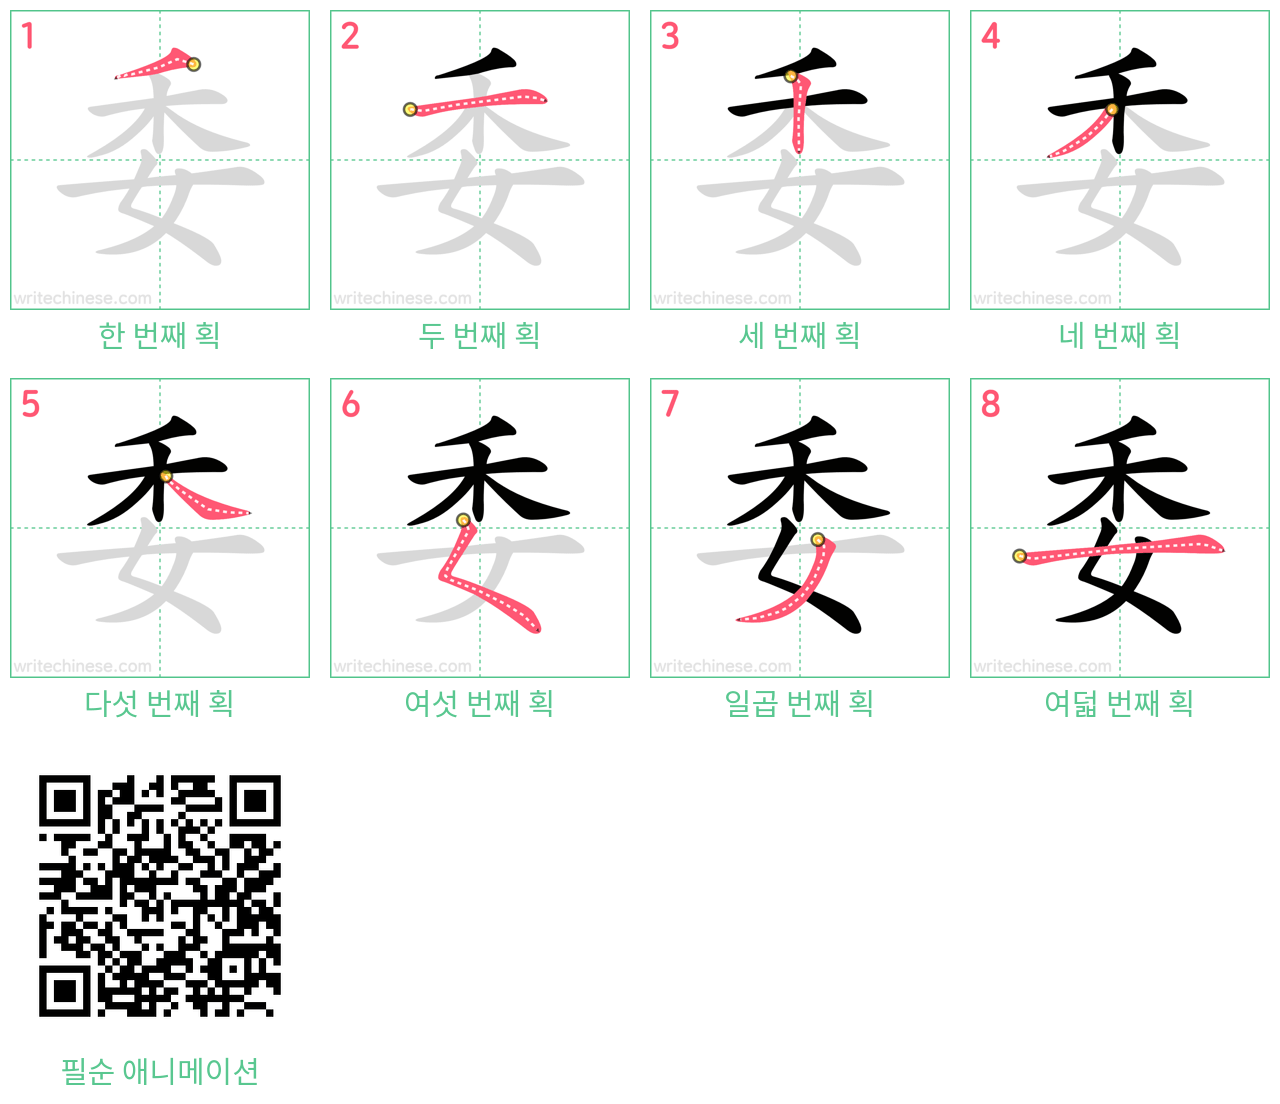 委 step-by-step stroke order diagrams